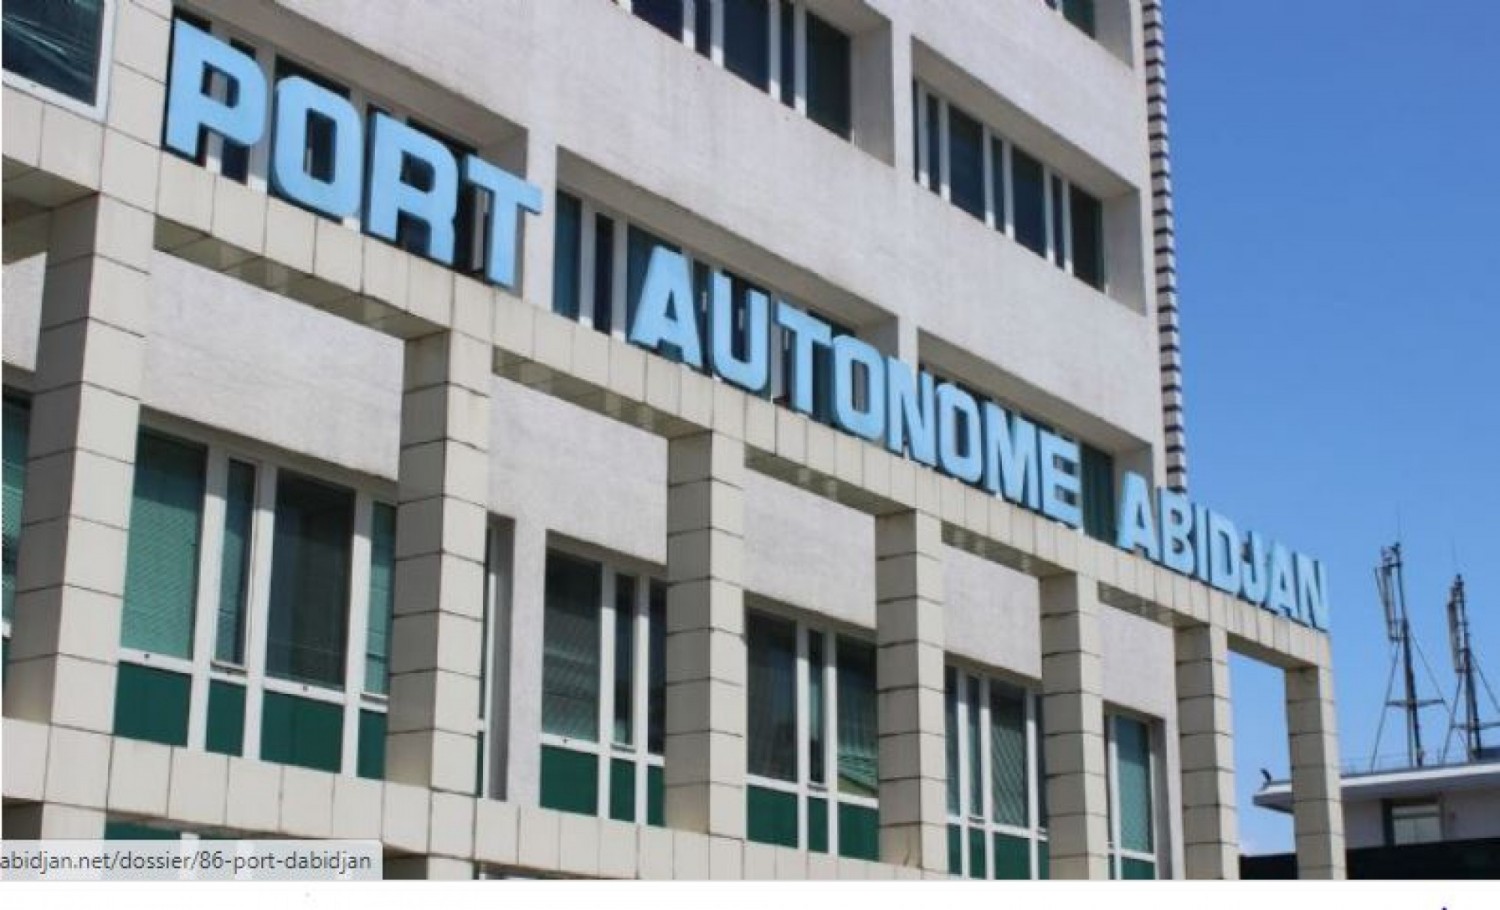 Côte d'Ivoire : Contrairement aux allégations, aucun recrutement n'est en cours au Port d'Abidjan, la Direction se réserve de donner une suite judiciaire à cette affaire